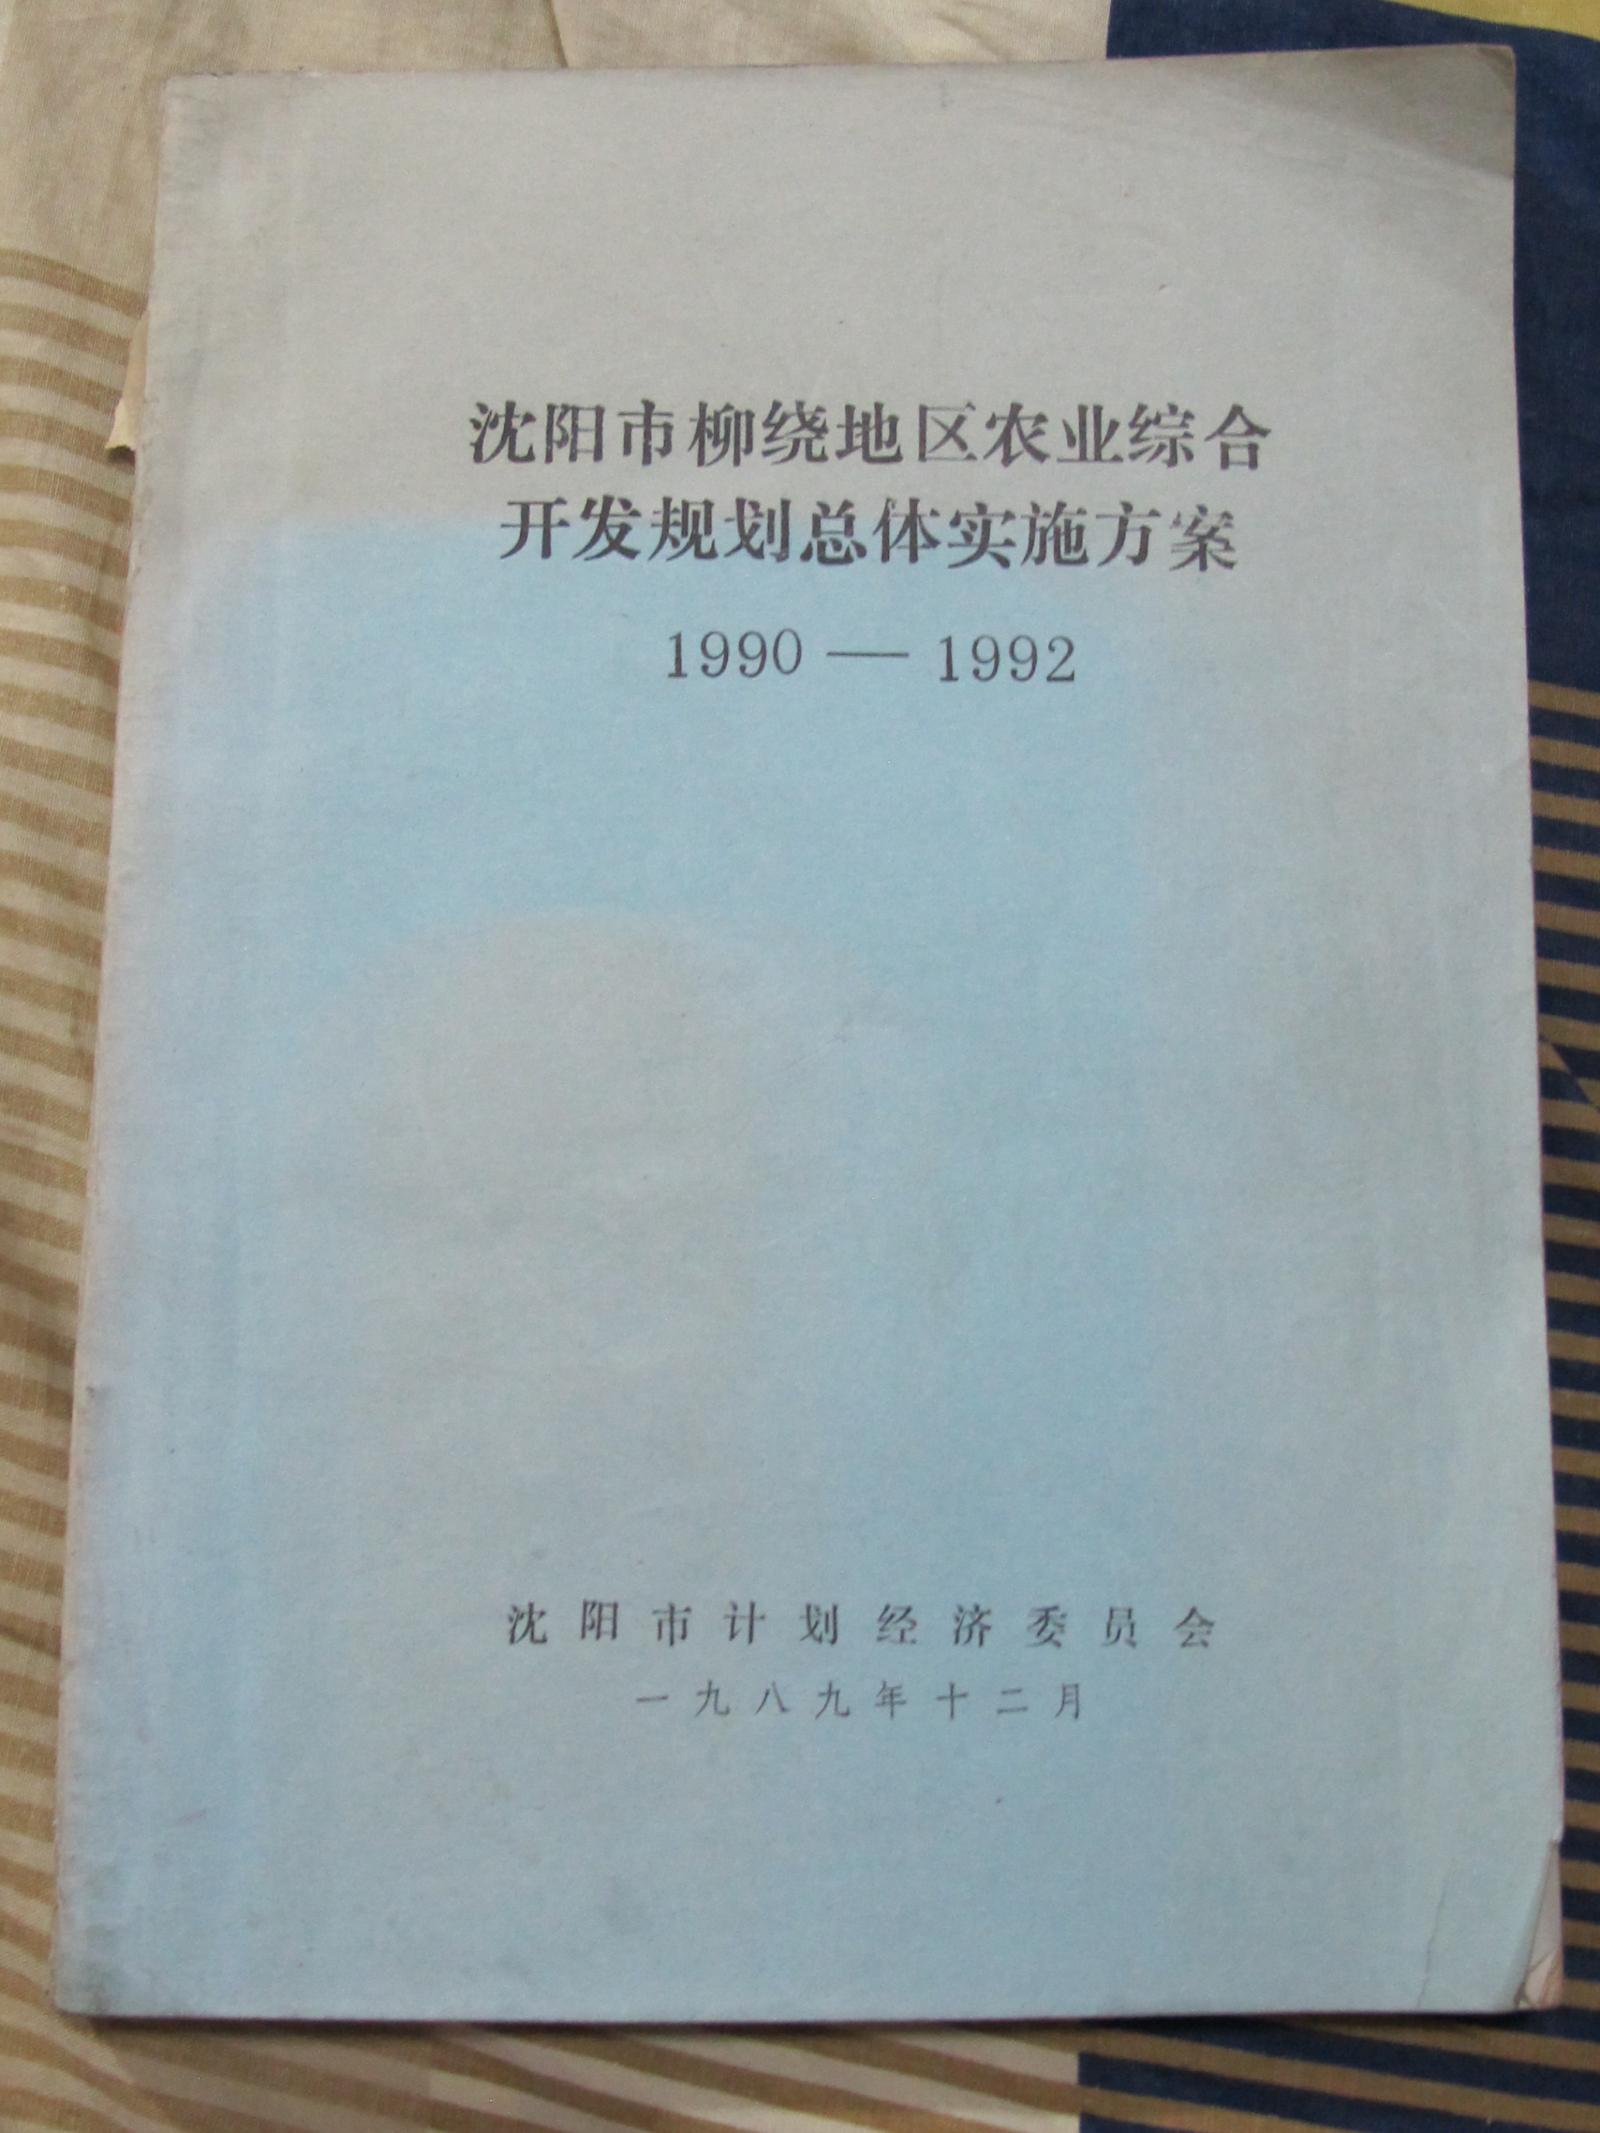 沈阳市柳绕地区农业综合开发规划总体实施方案1990-1992